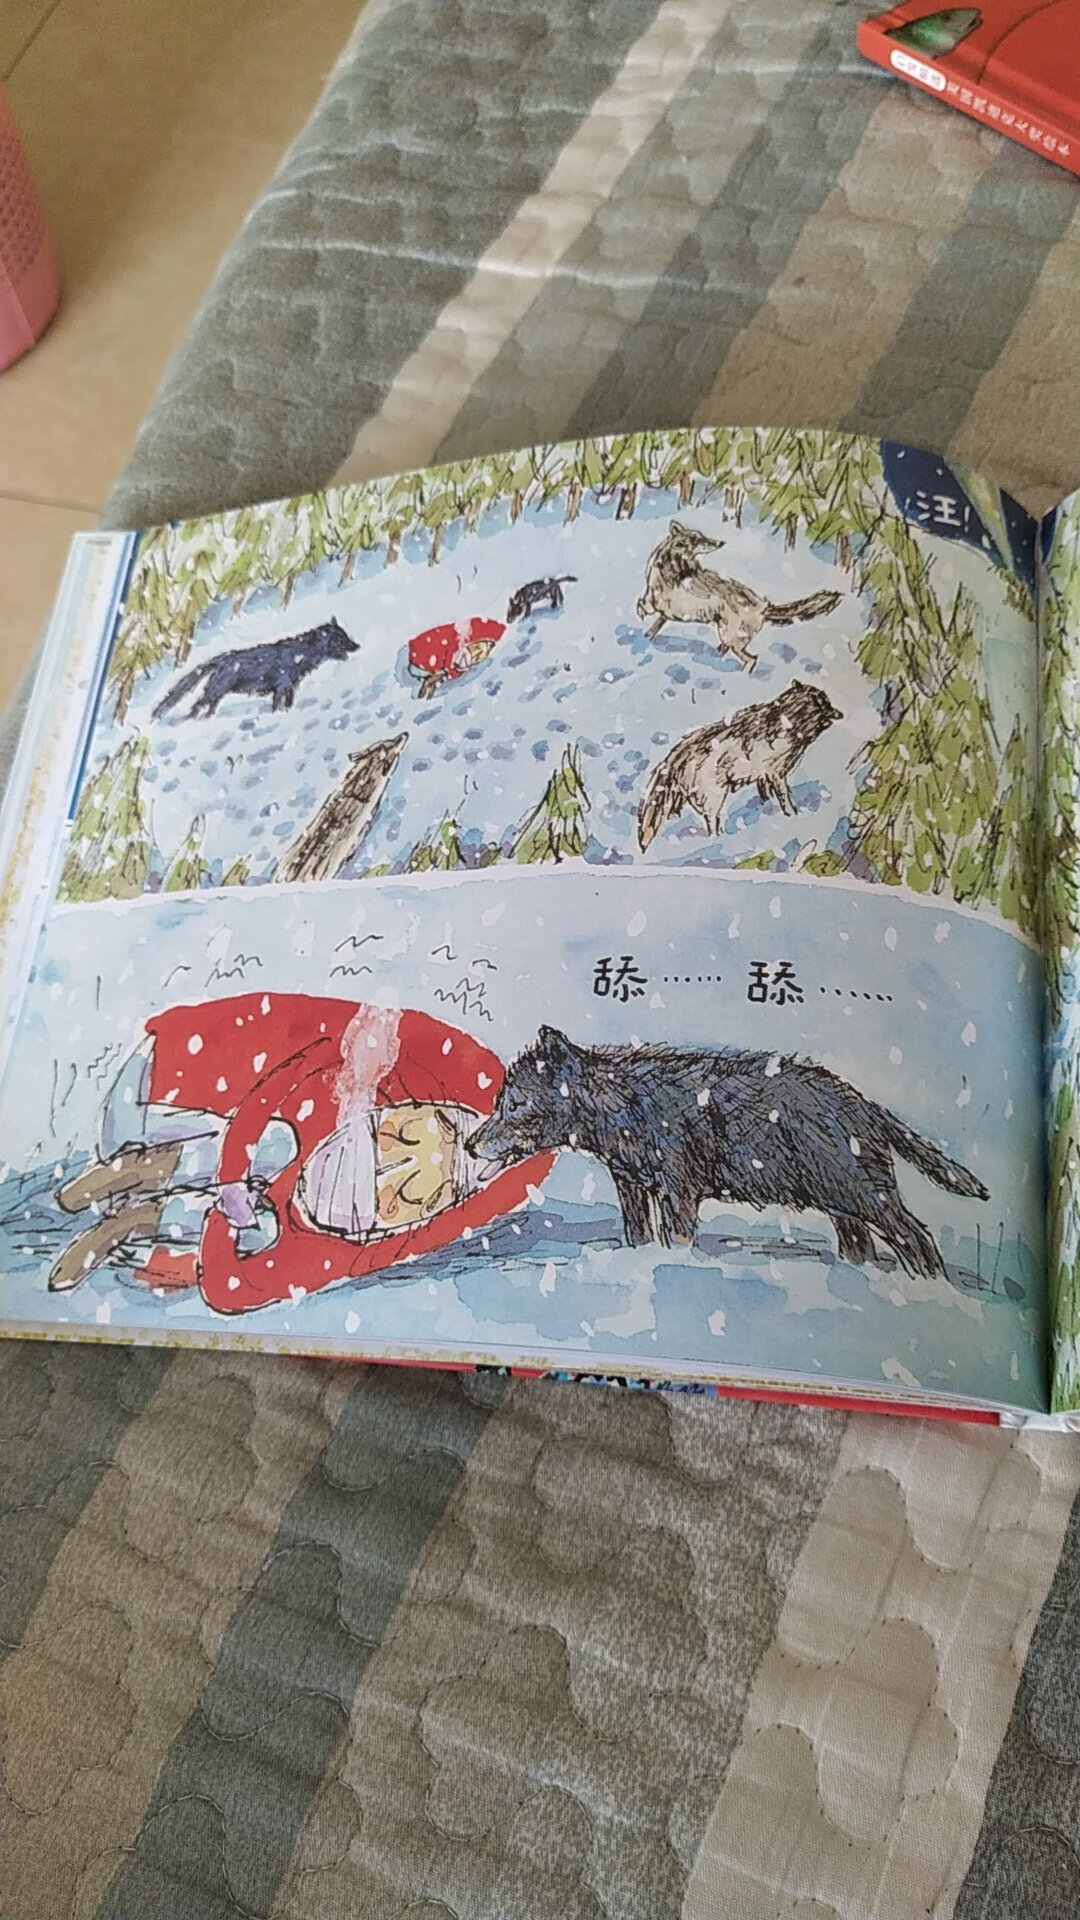 这是一本无字书。讲述了一个男孩和一只小灰狼同时迷路了的故事。故事很温暖，适合我们家的暖宝宝。我家宝宝最不能接受大灰狼把小猪吃掉了什么的。